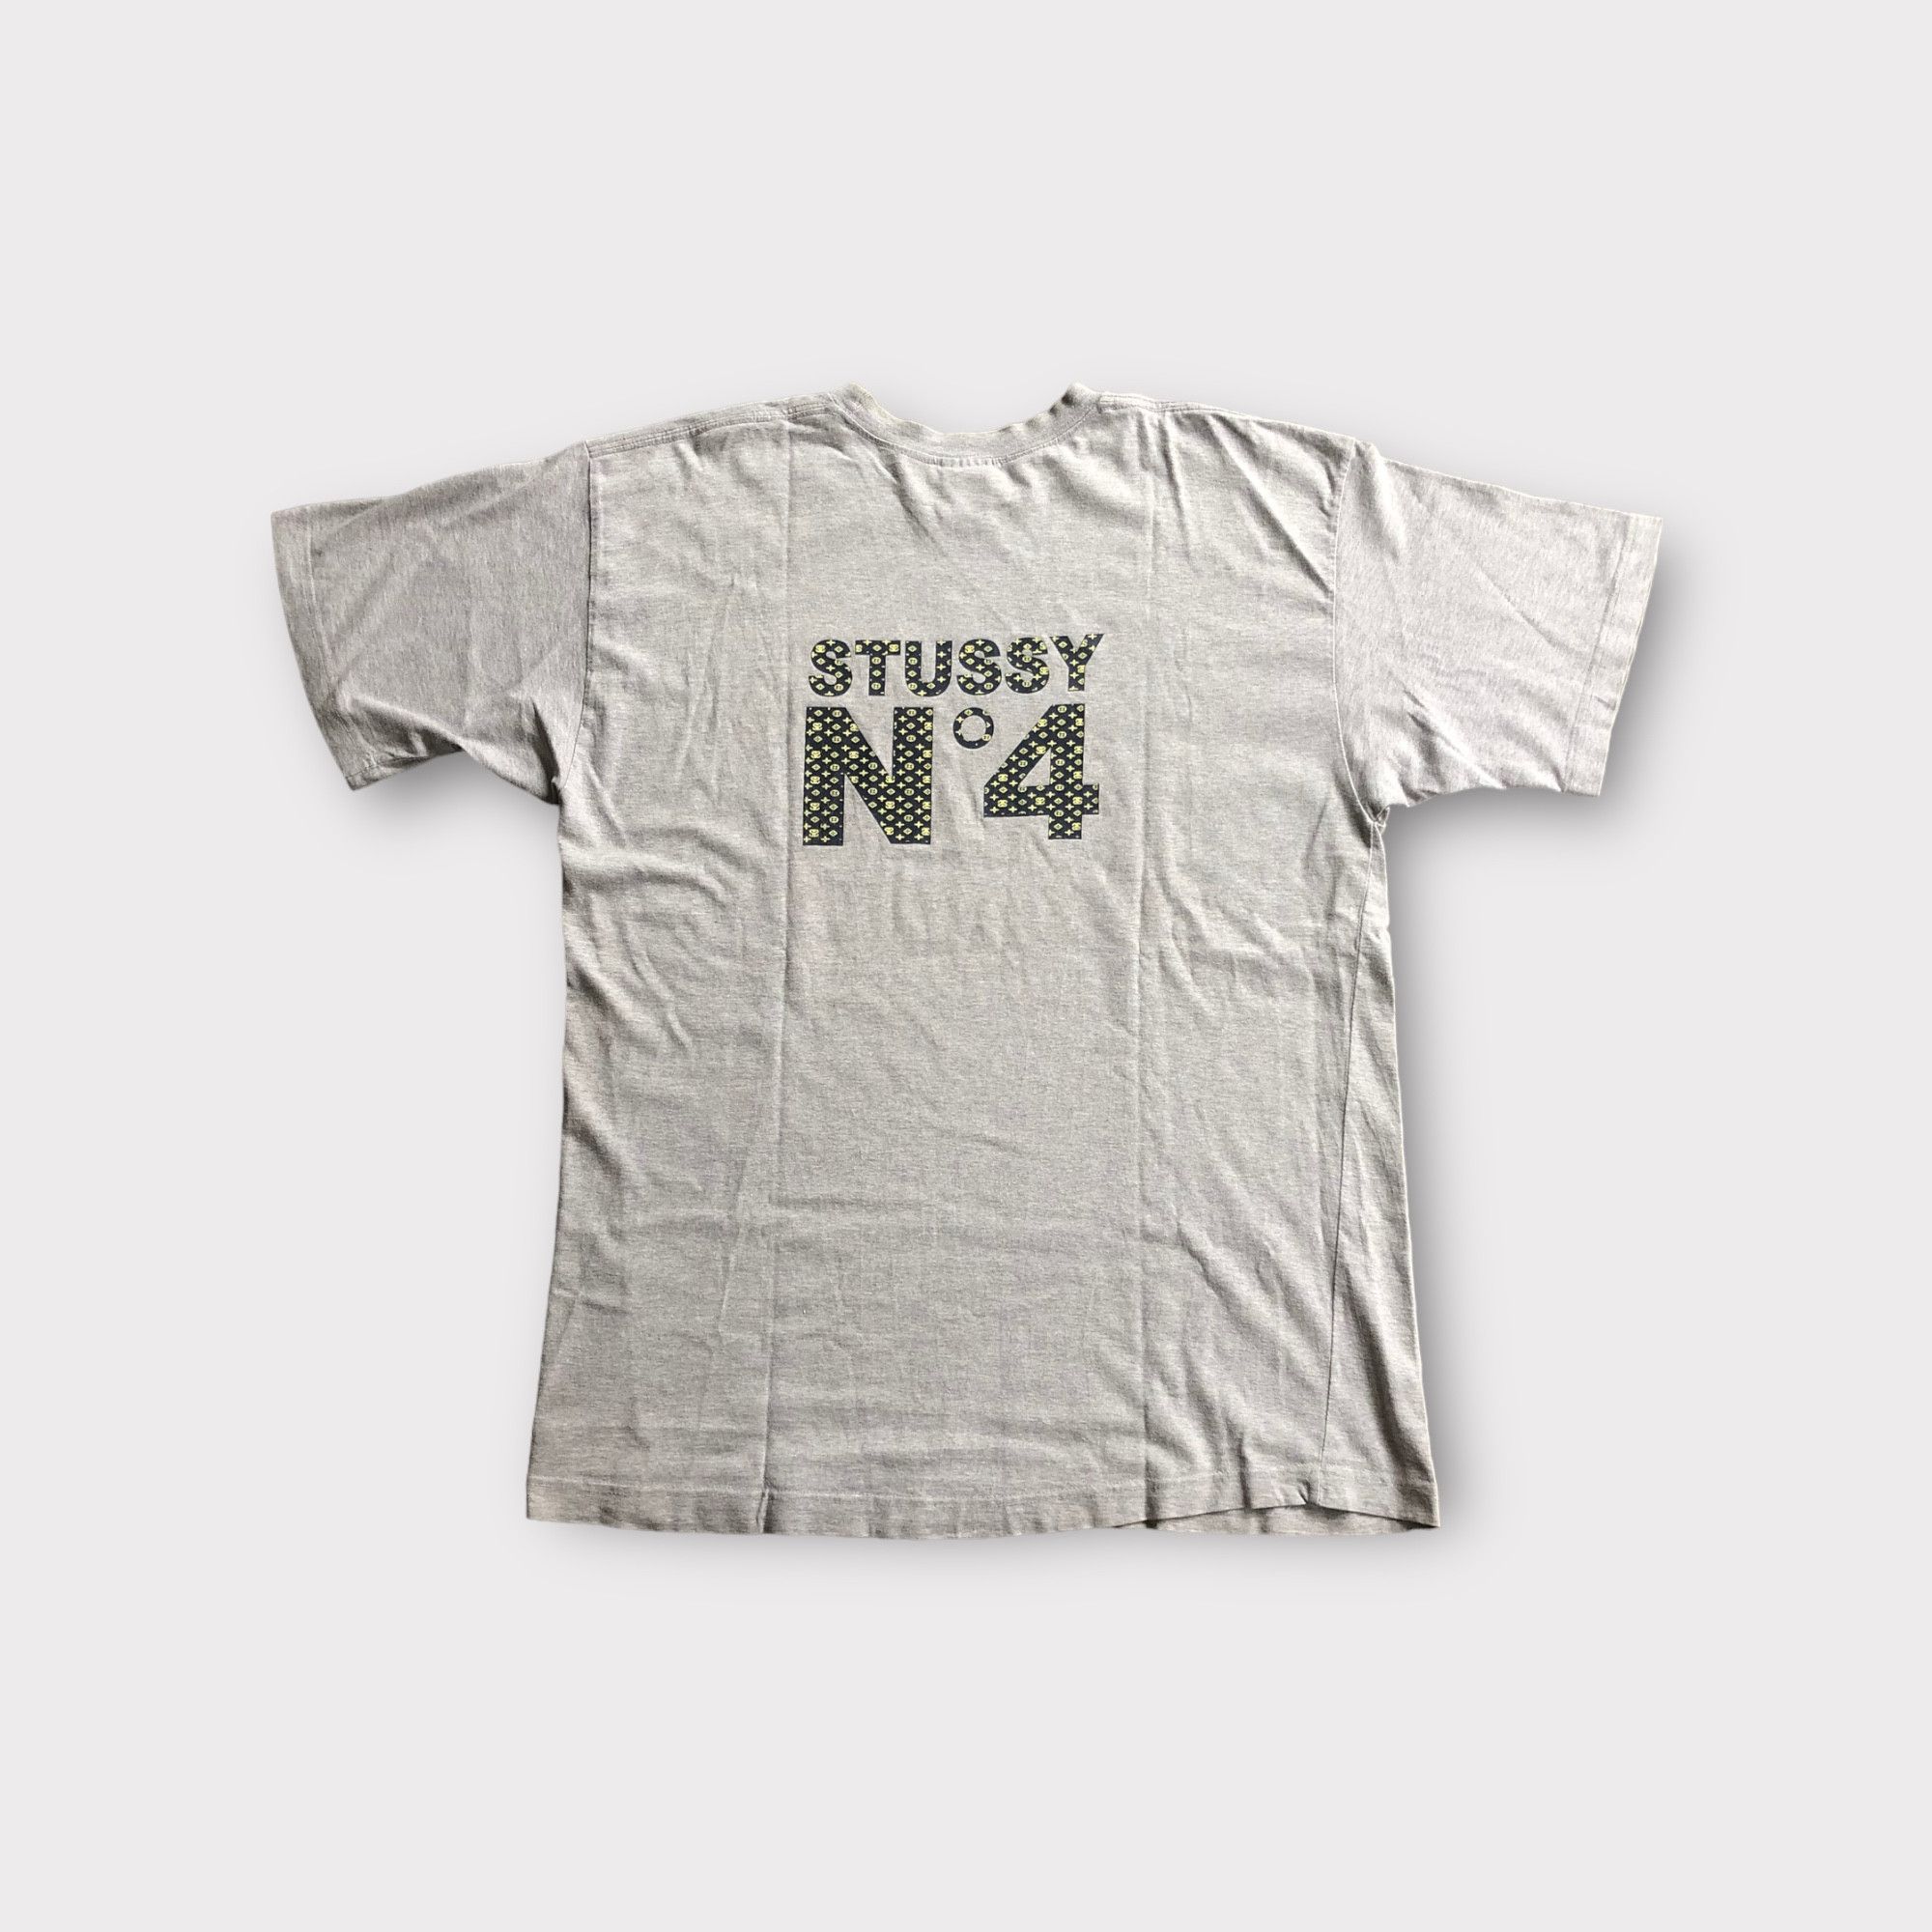 Stussy No 4 Monogram X LV 90s USA T-Shirt